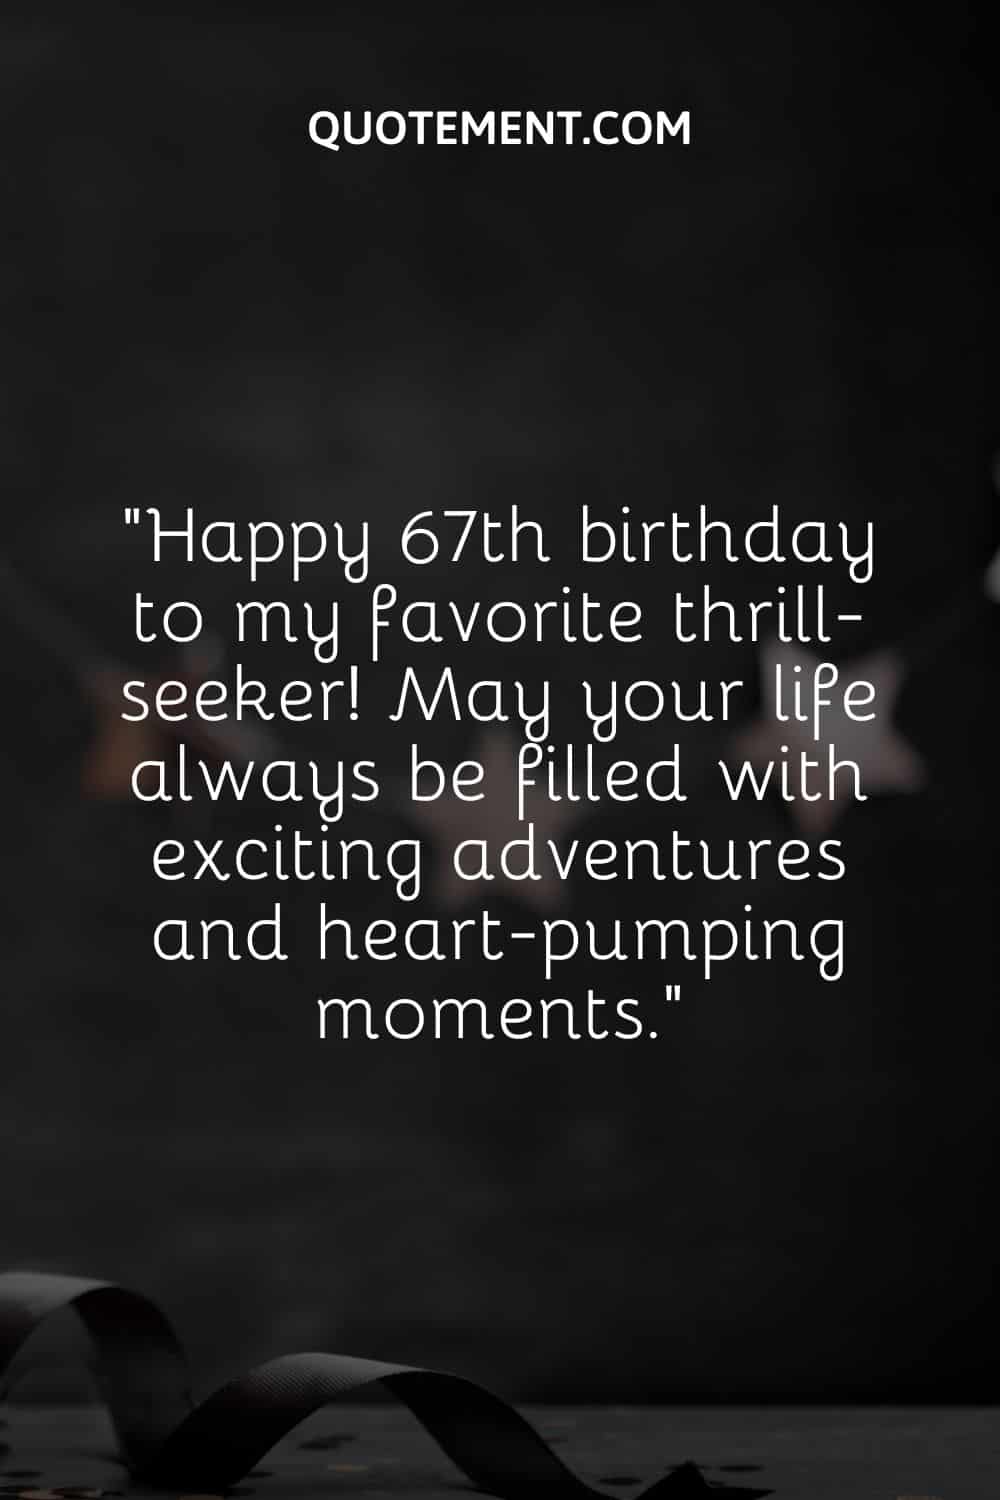 una cinta negra rizada sobre fondo oscuro que representa una forma sincera de desear un feliz 67 cumpleaños